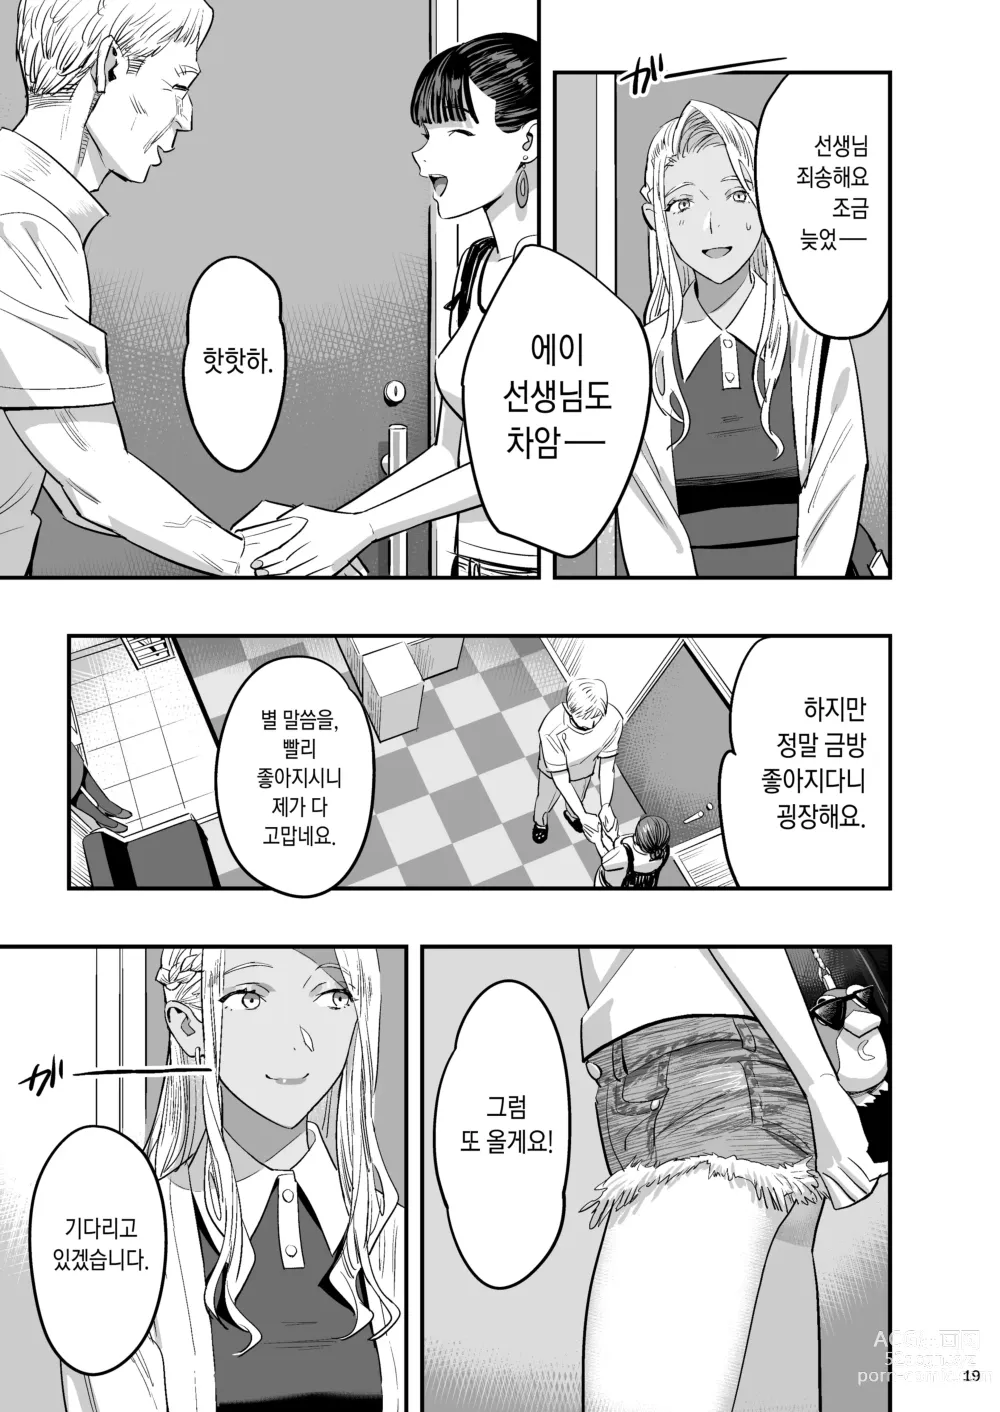 Page 16 of doujinshi 내가 먼저 좋아했는데 정체.